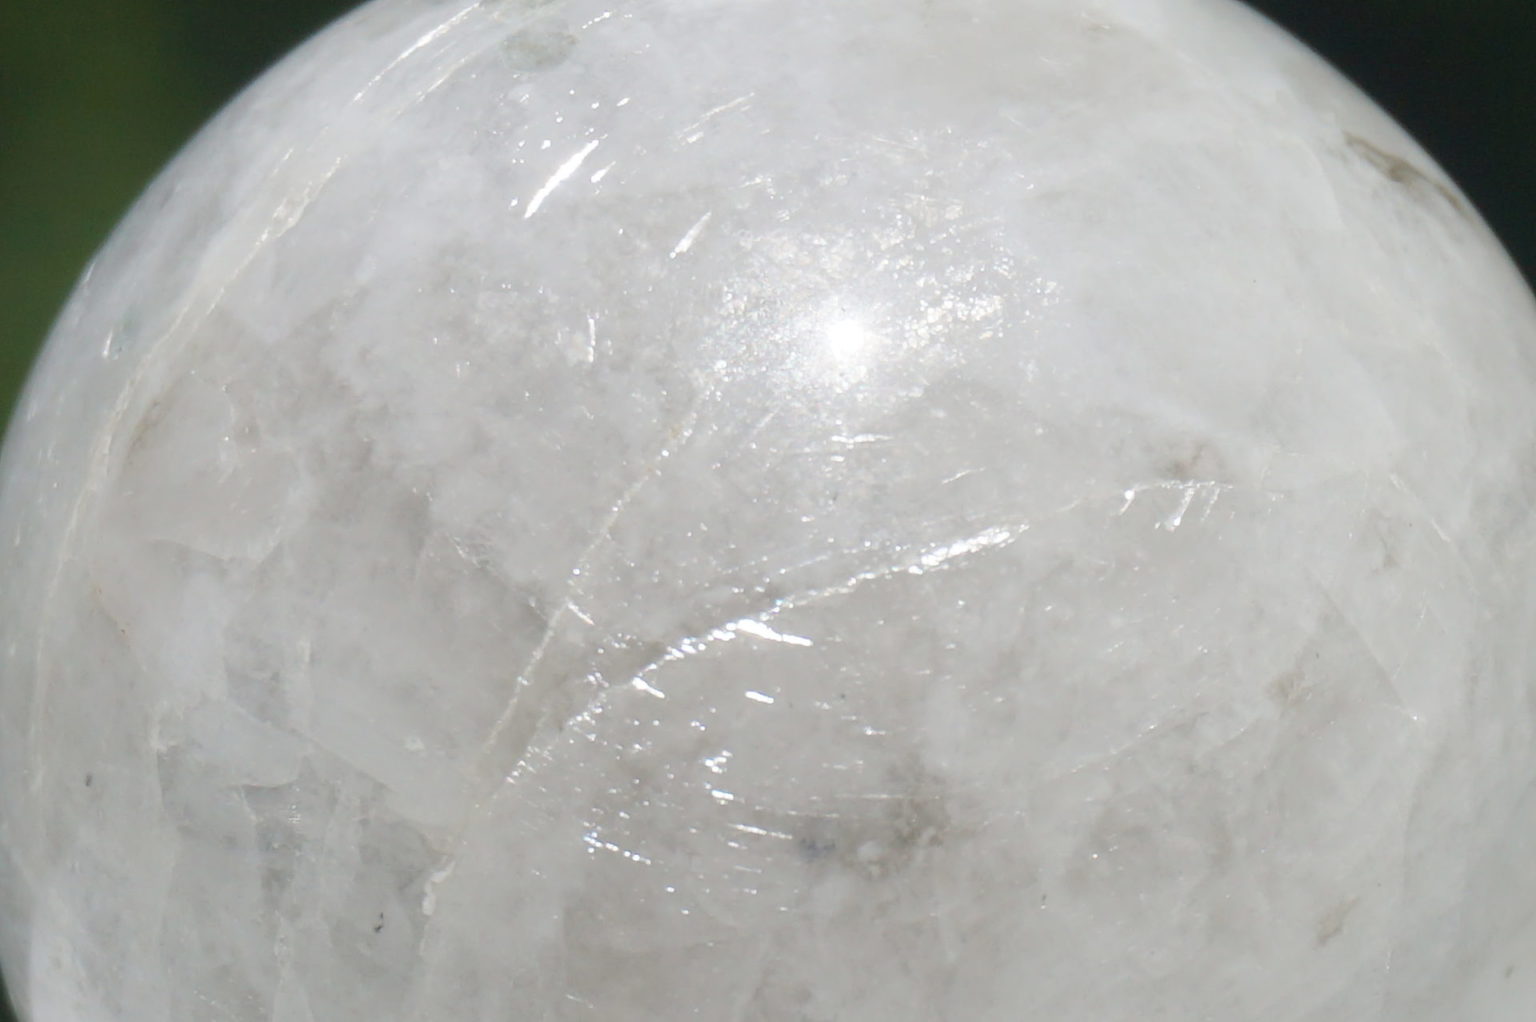 white-labradorite-sphere03